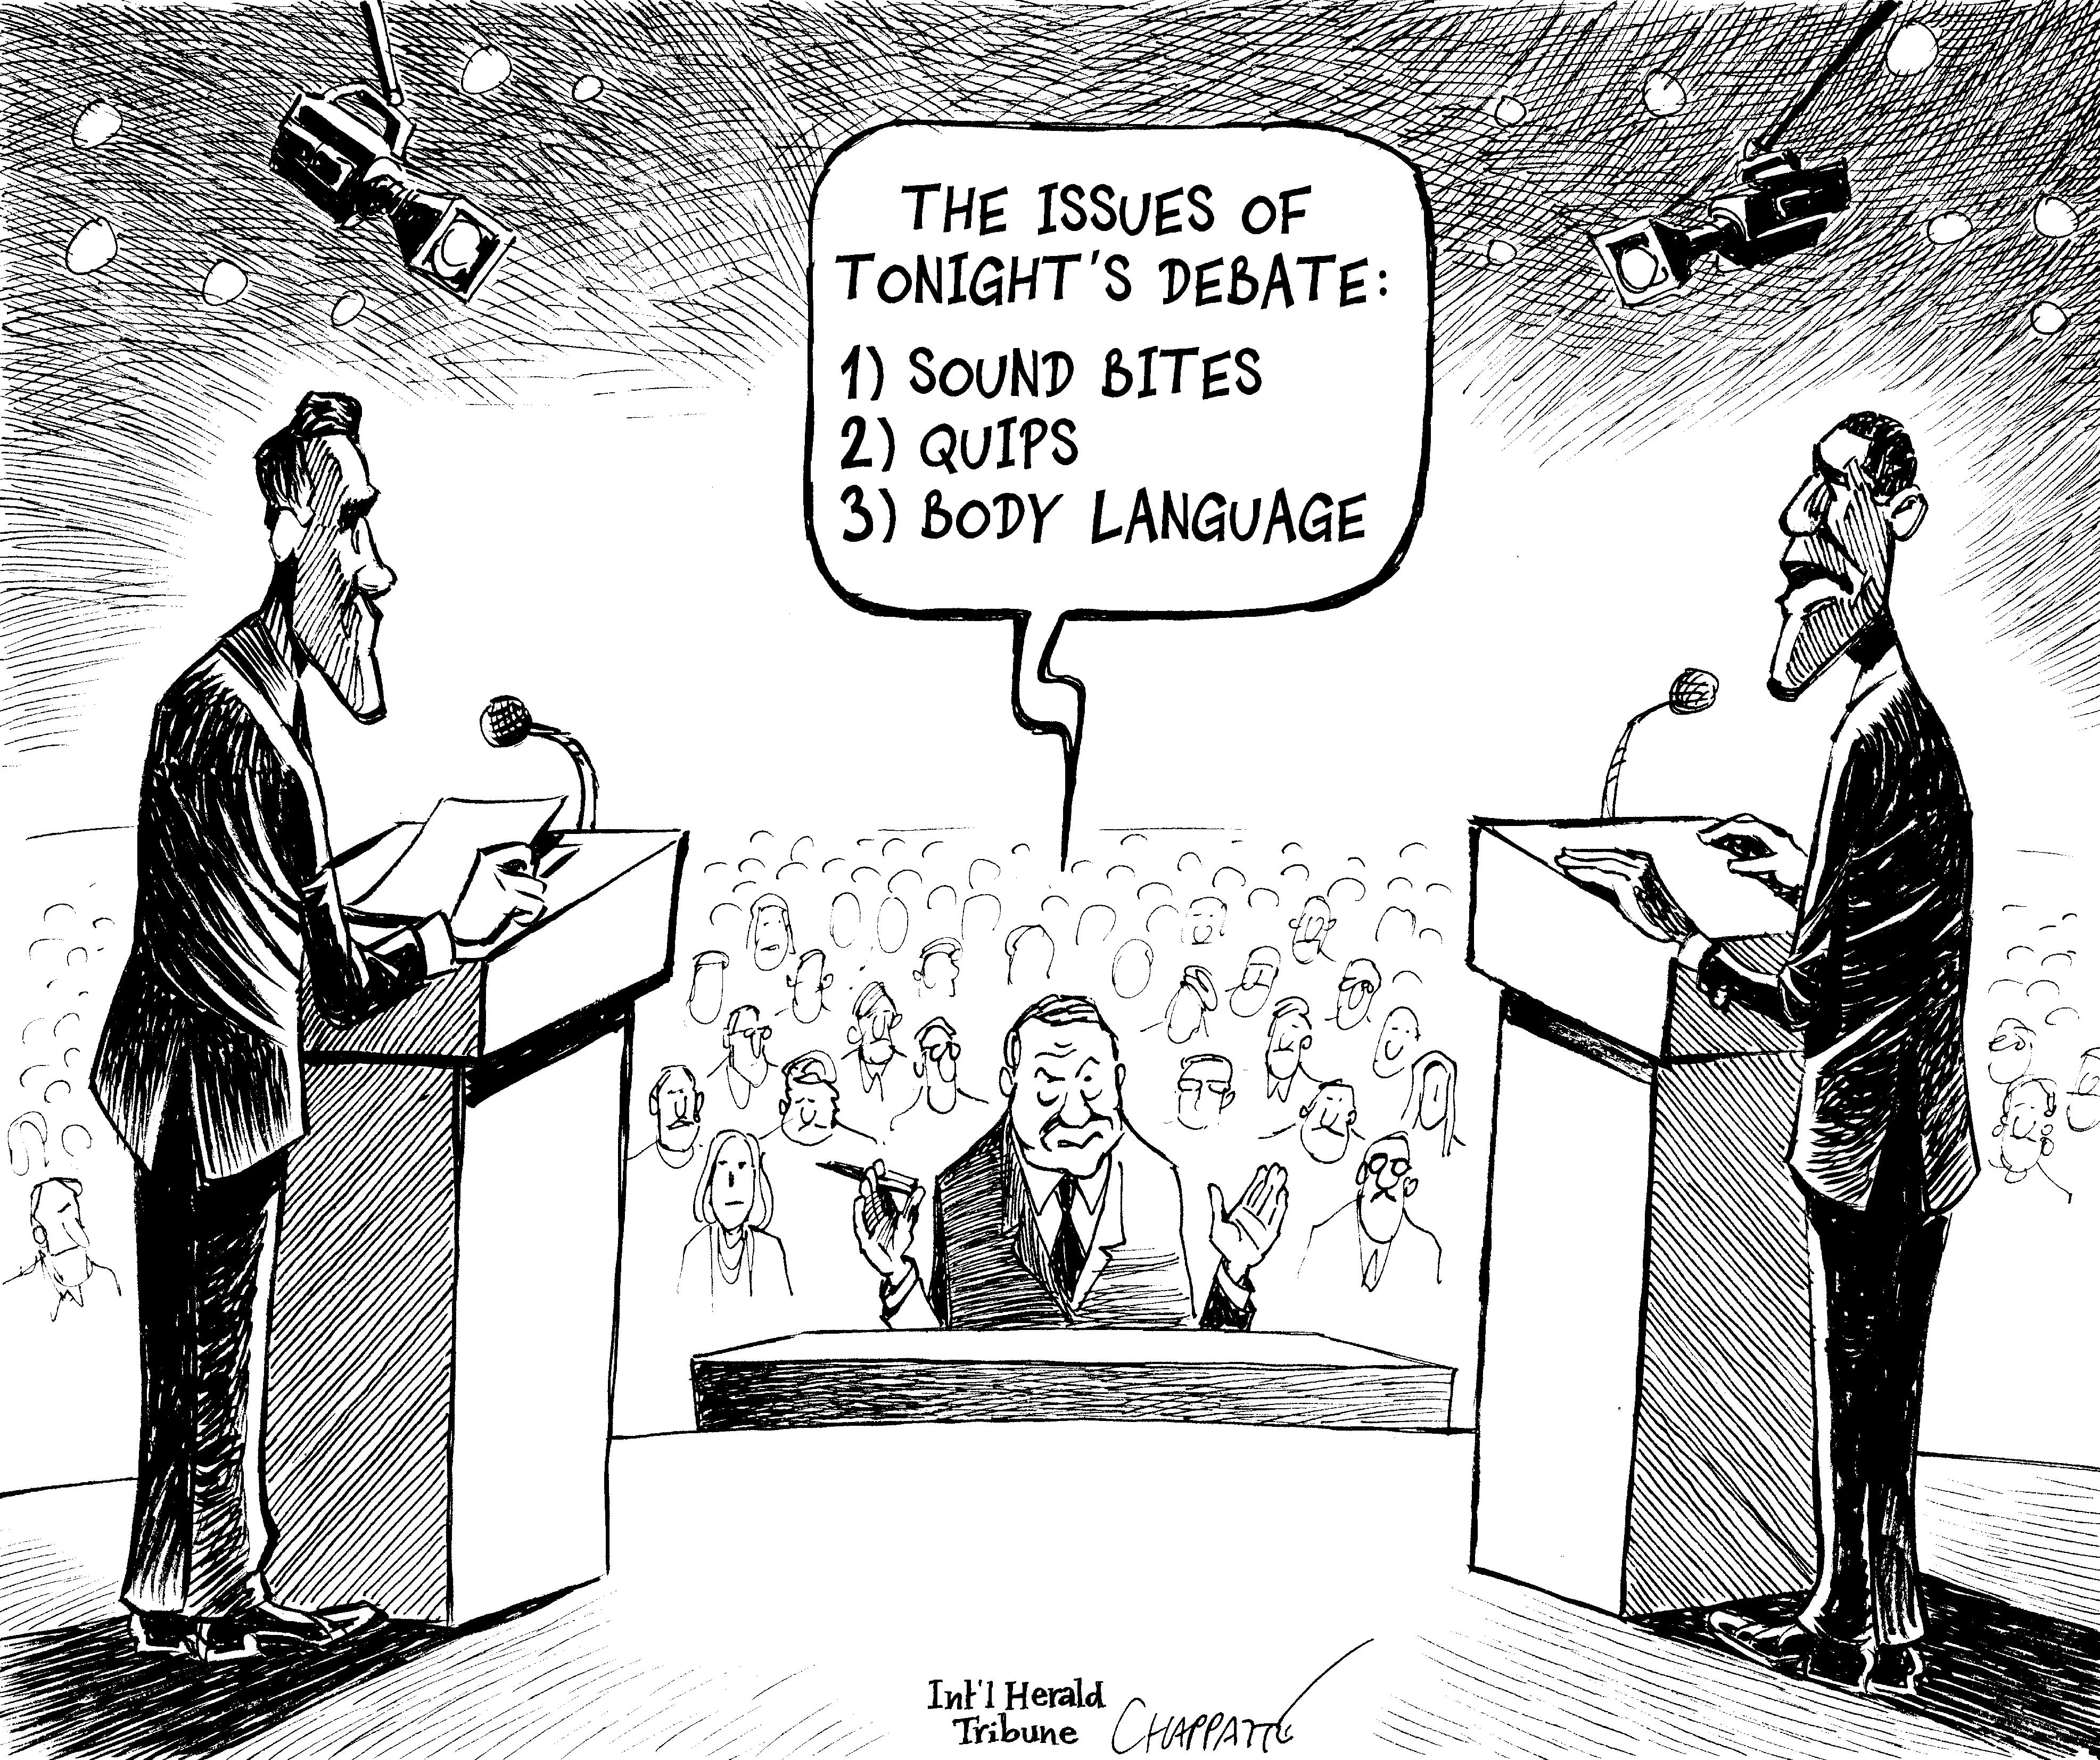 U.S. Presidential Debate 2012